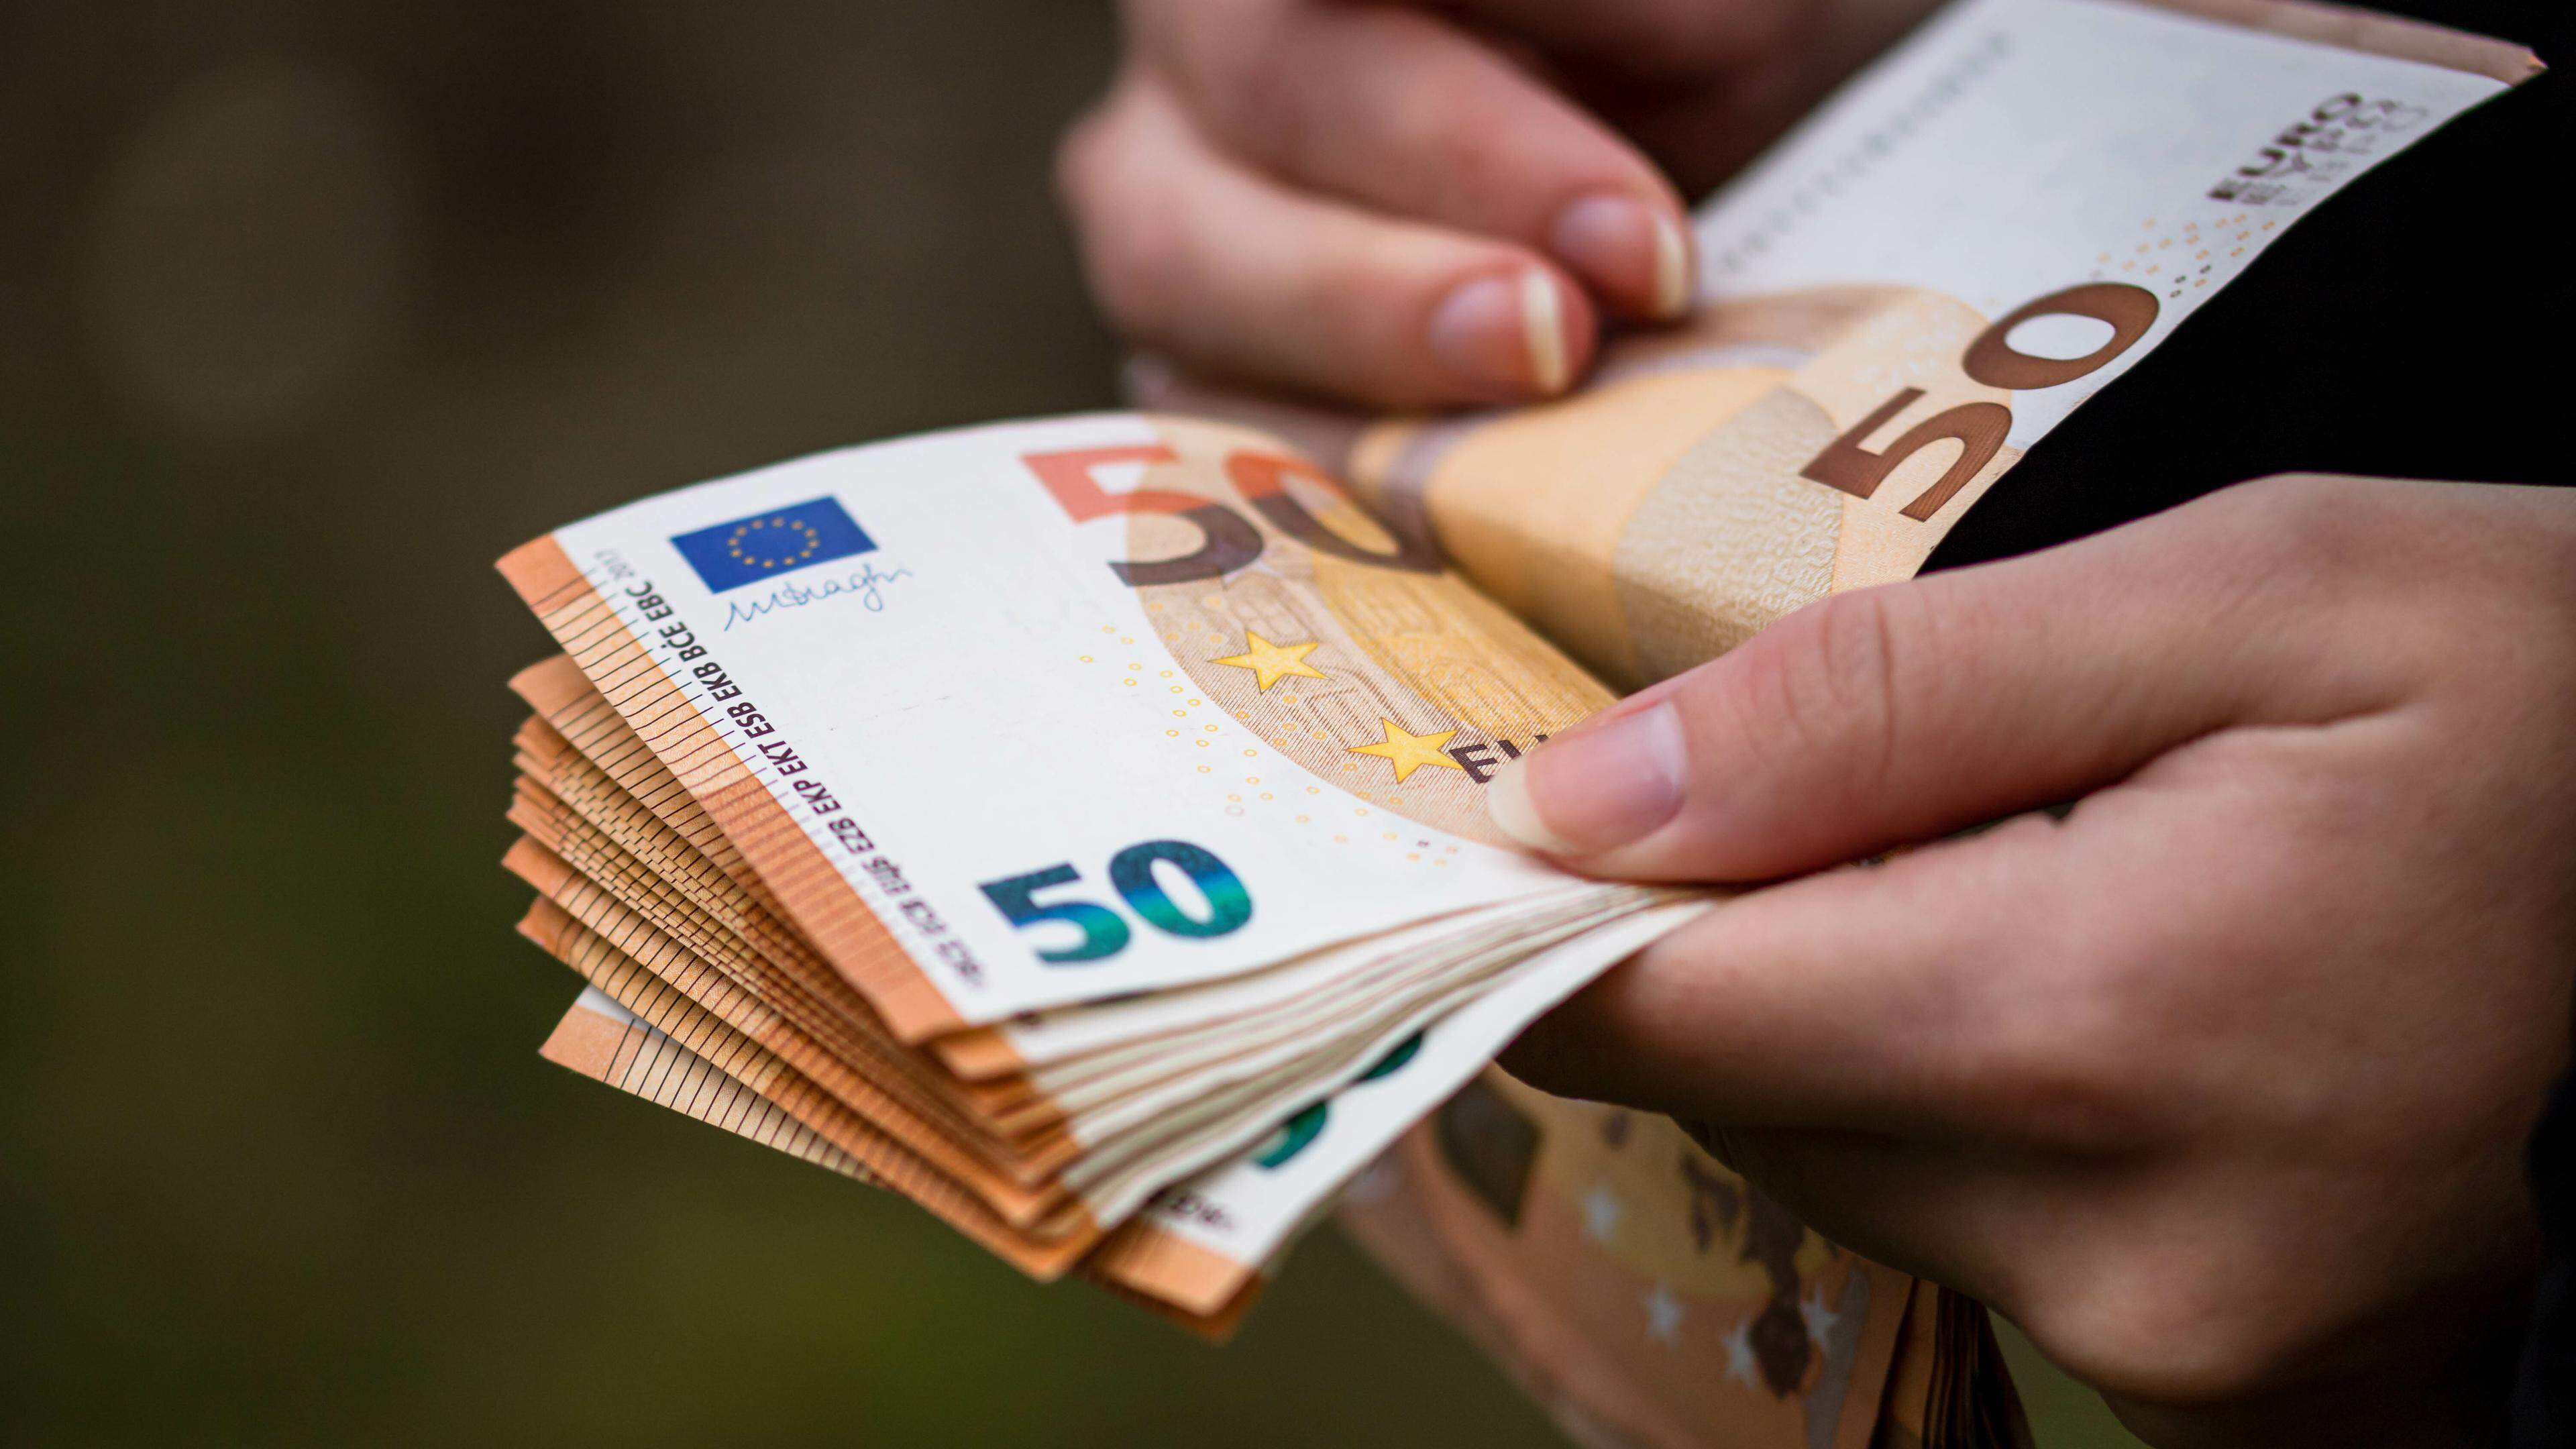 Novo jogo Eurosorteio já é oficial e pode dar-lhe 20 mil euros por mês  durante 30 anos - Notícias de hoje - IOL